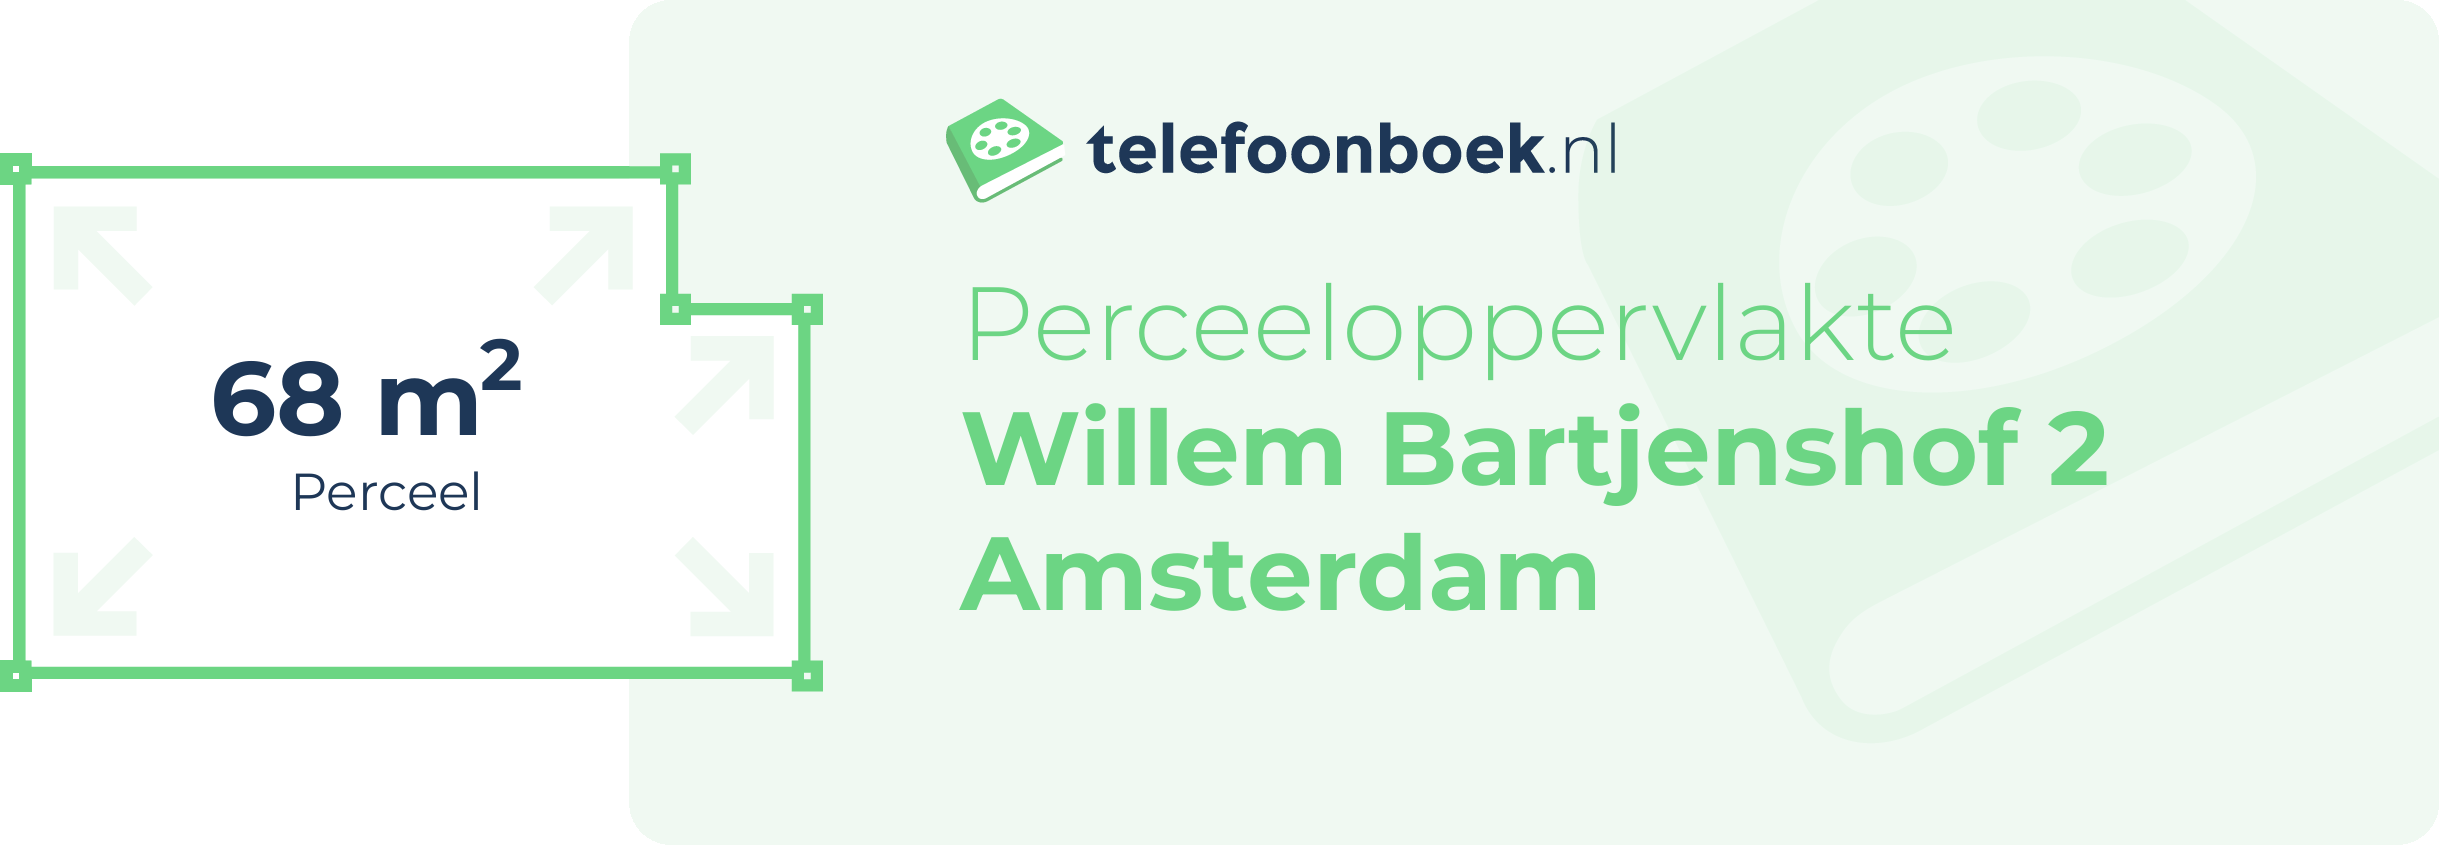 Perceeloppervlakte Willem Bartjenshof 2 Amsterdam